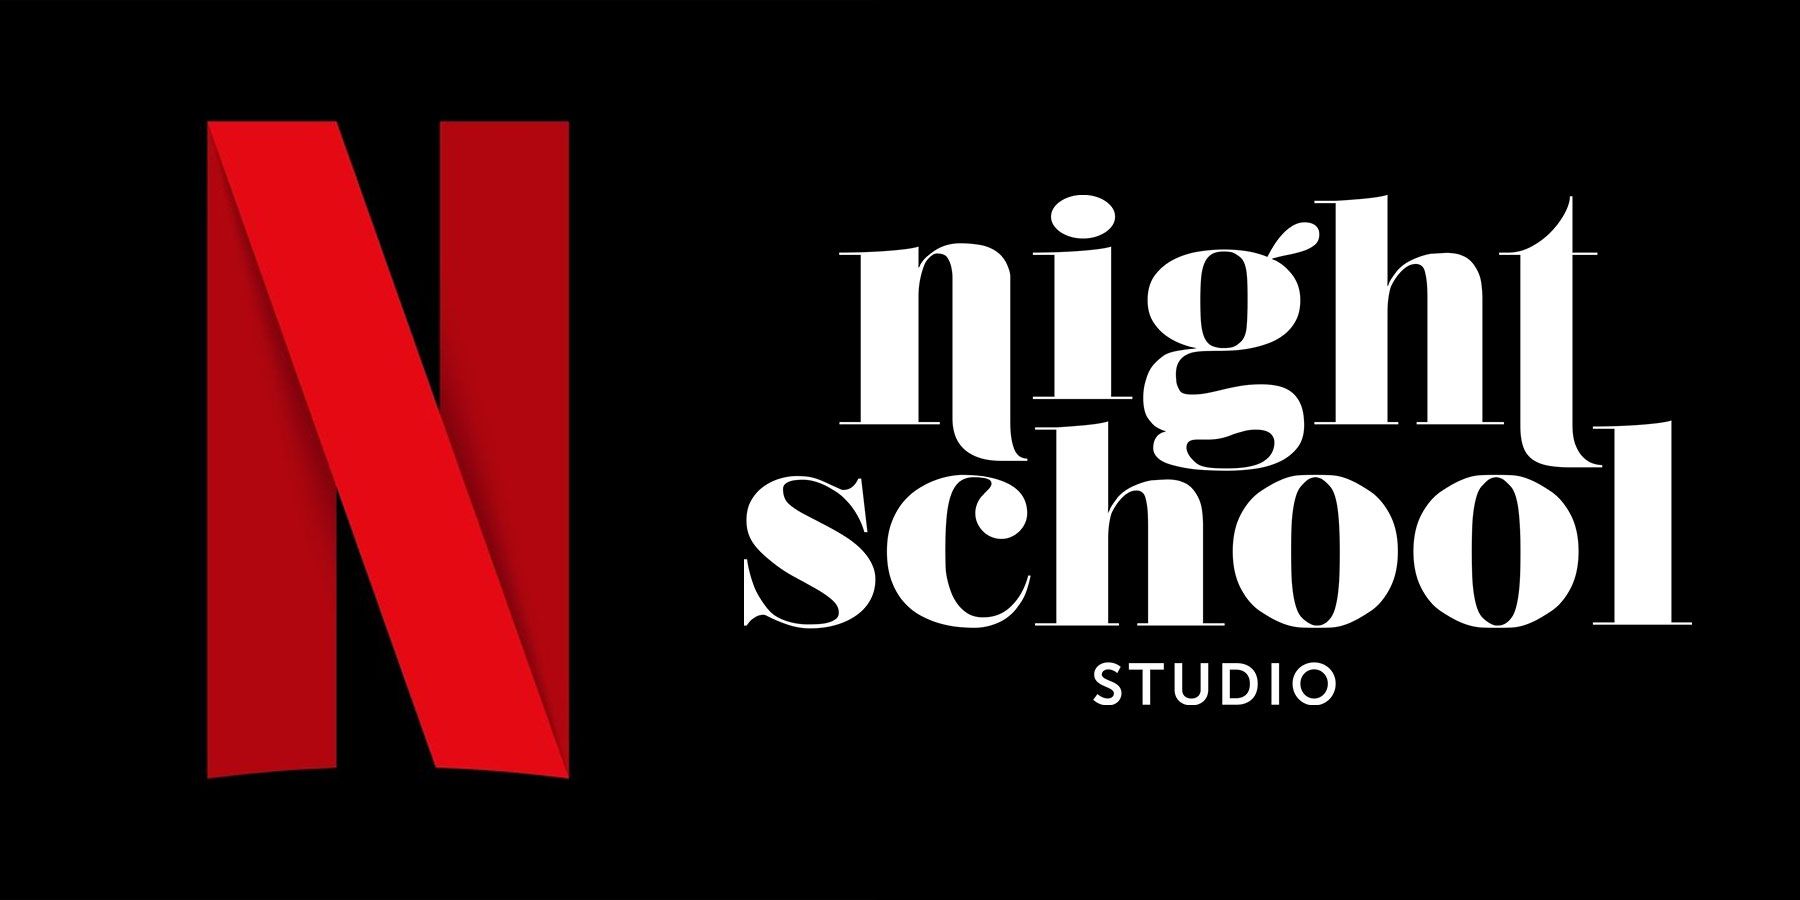 Netflix Memperoleh Studio Sekolah Malam ialah Petanda Baik untuk Cita-cita Penstrimannya